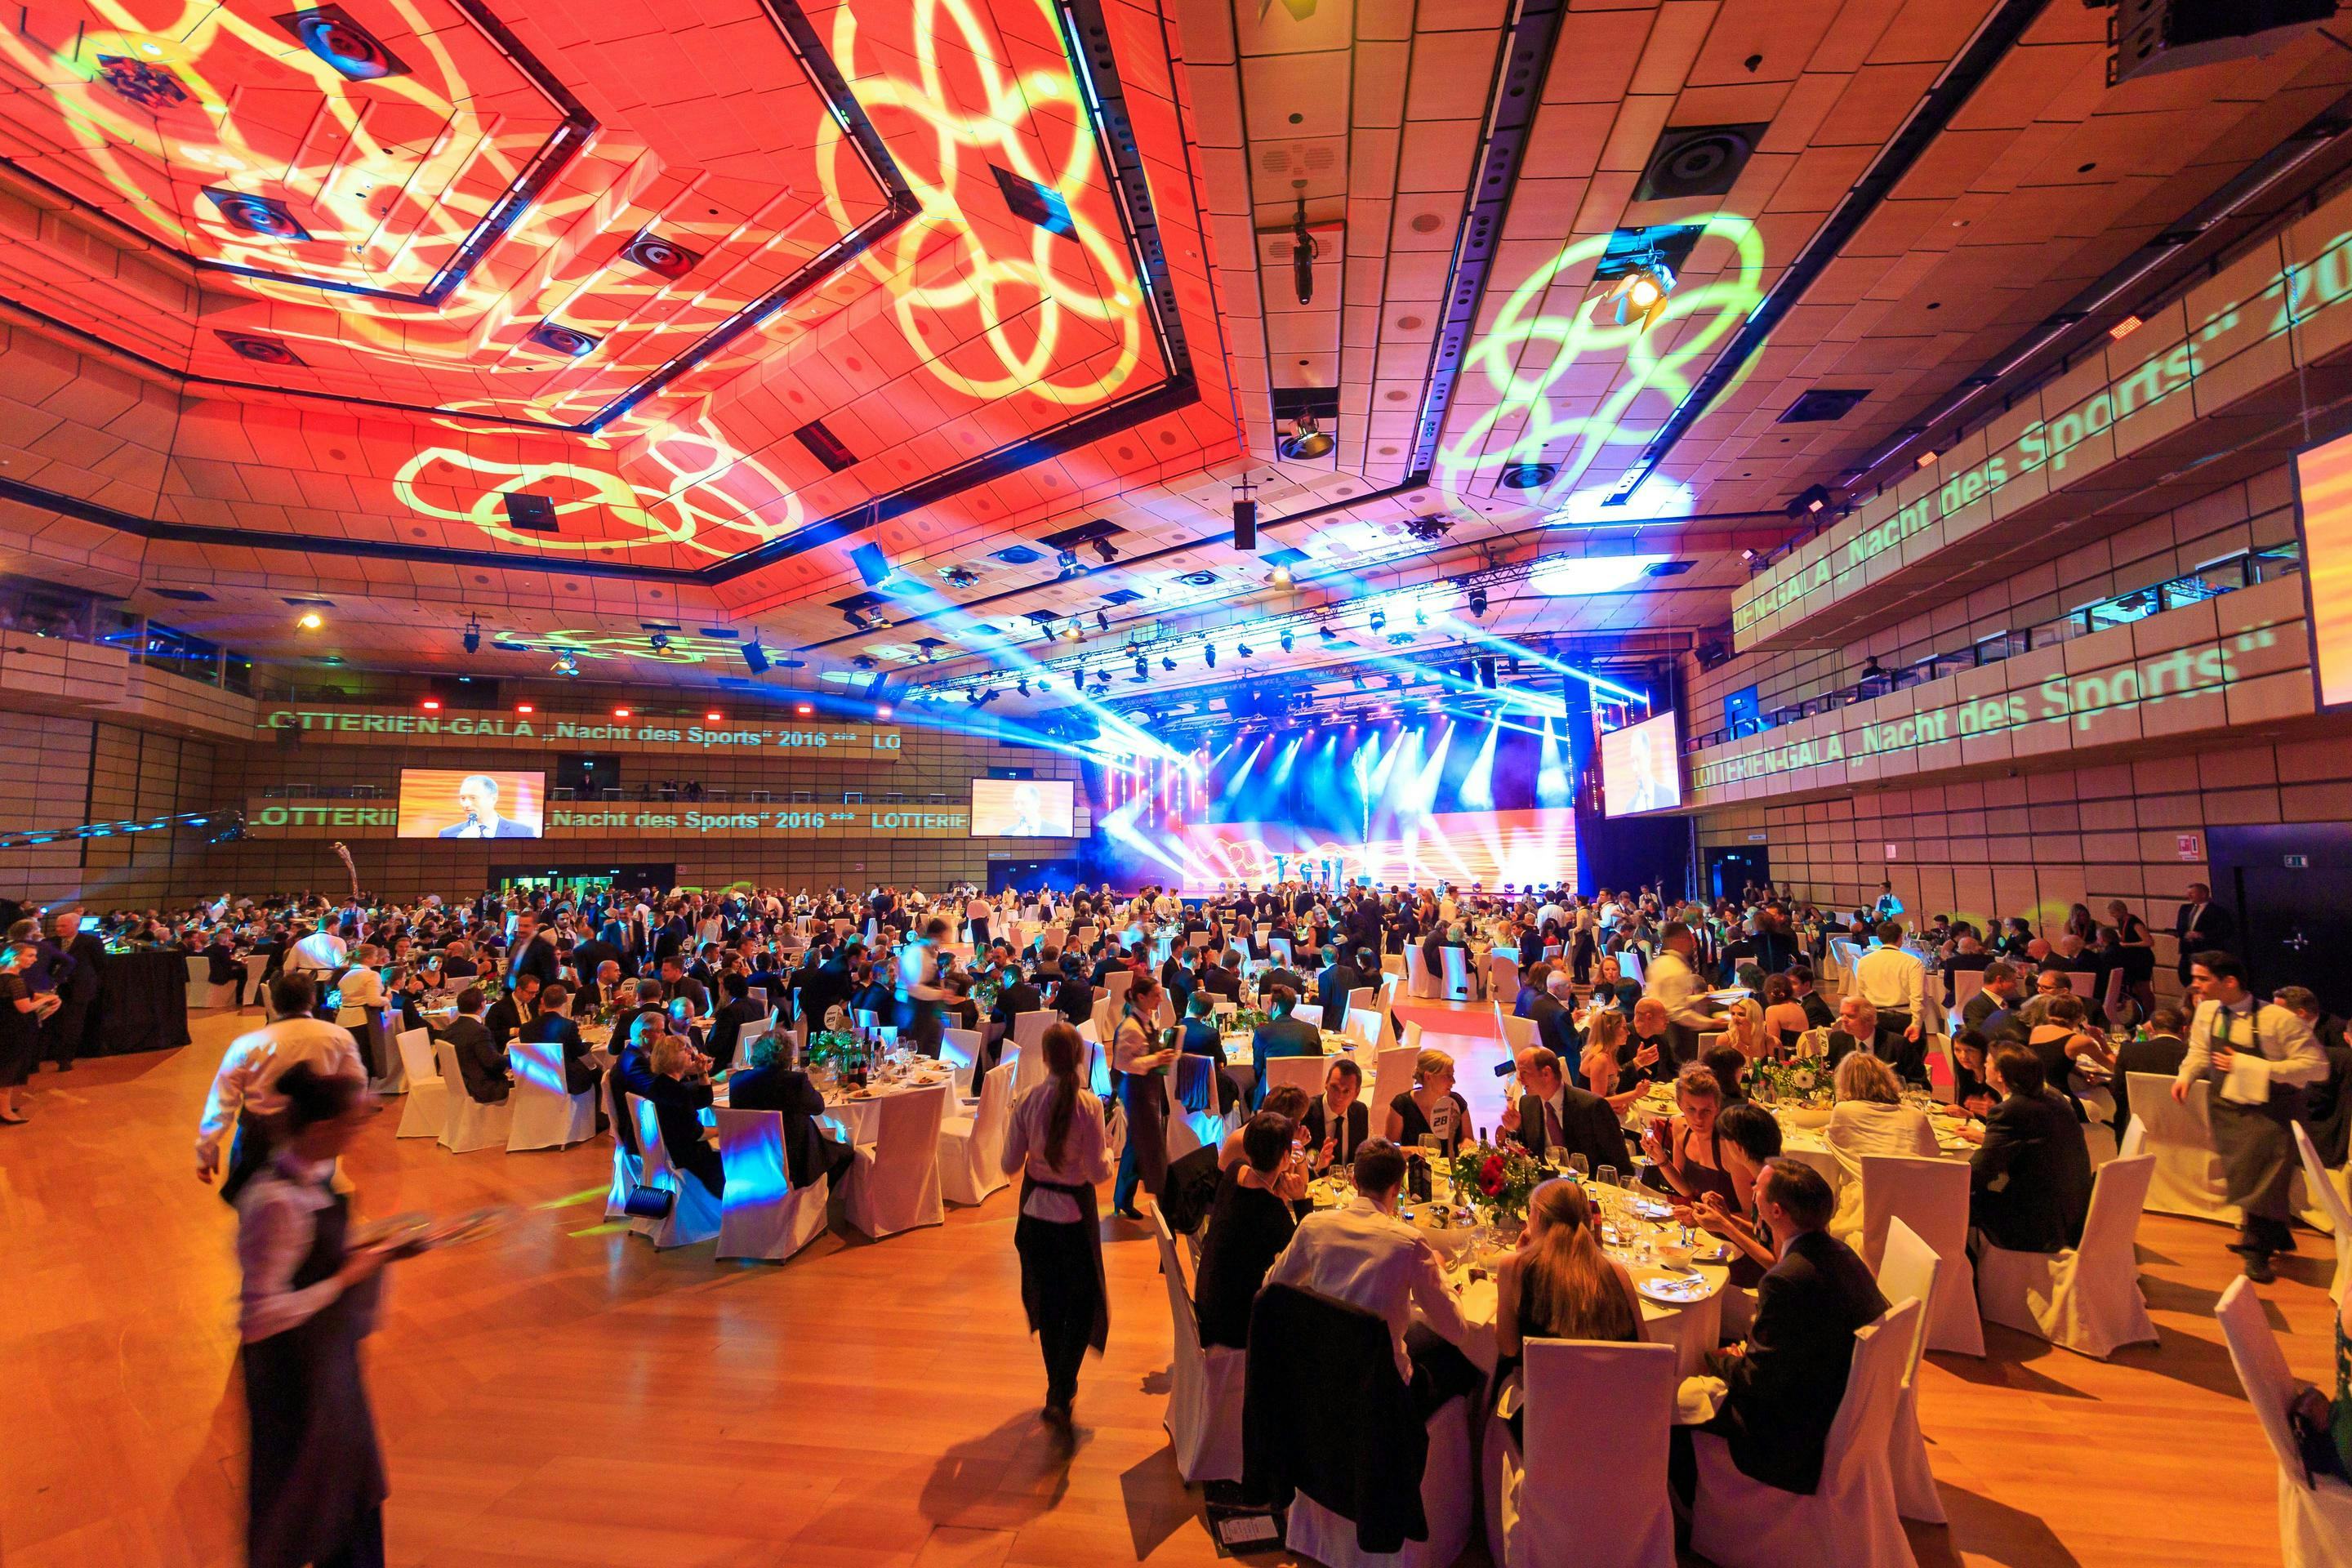 Foto: Menschen in einer Halle vor einer Buehne, Gala-Bestuhlung